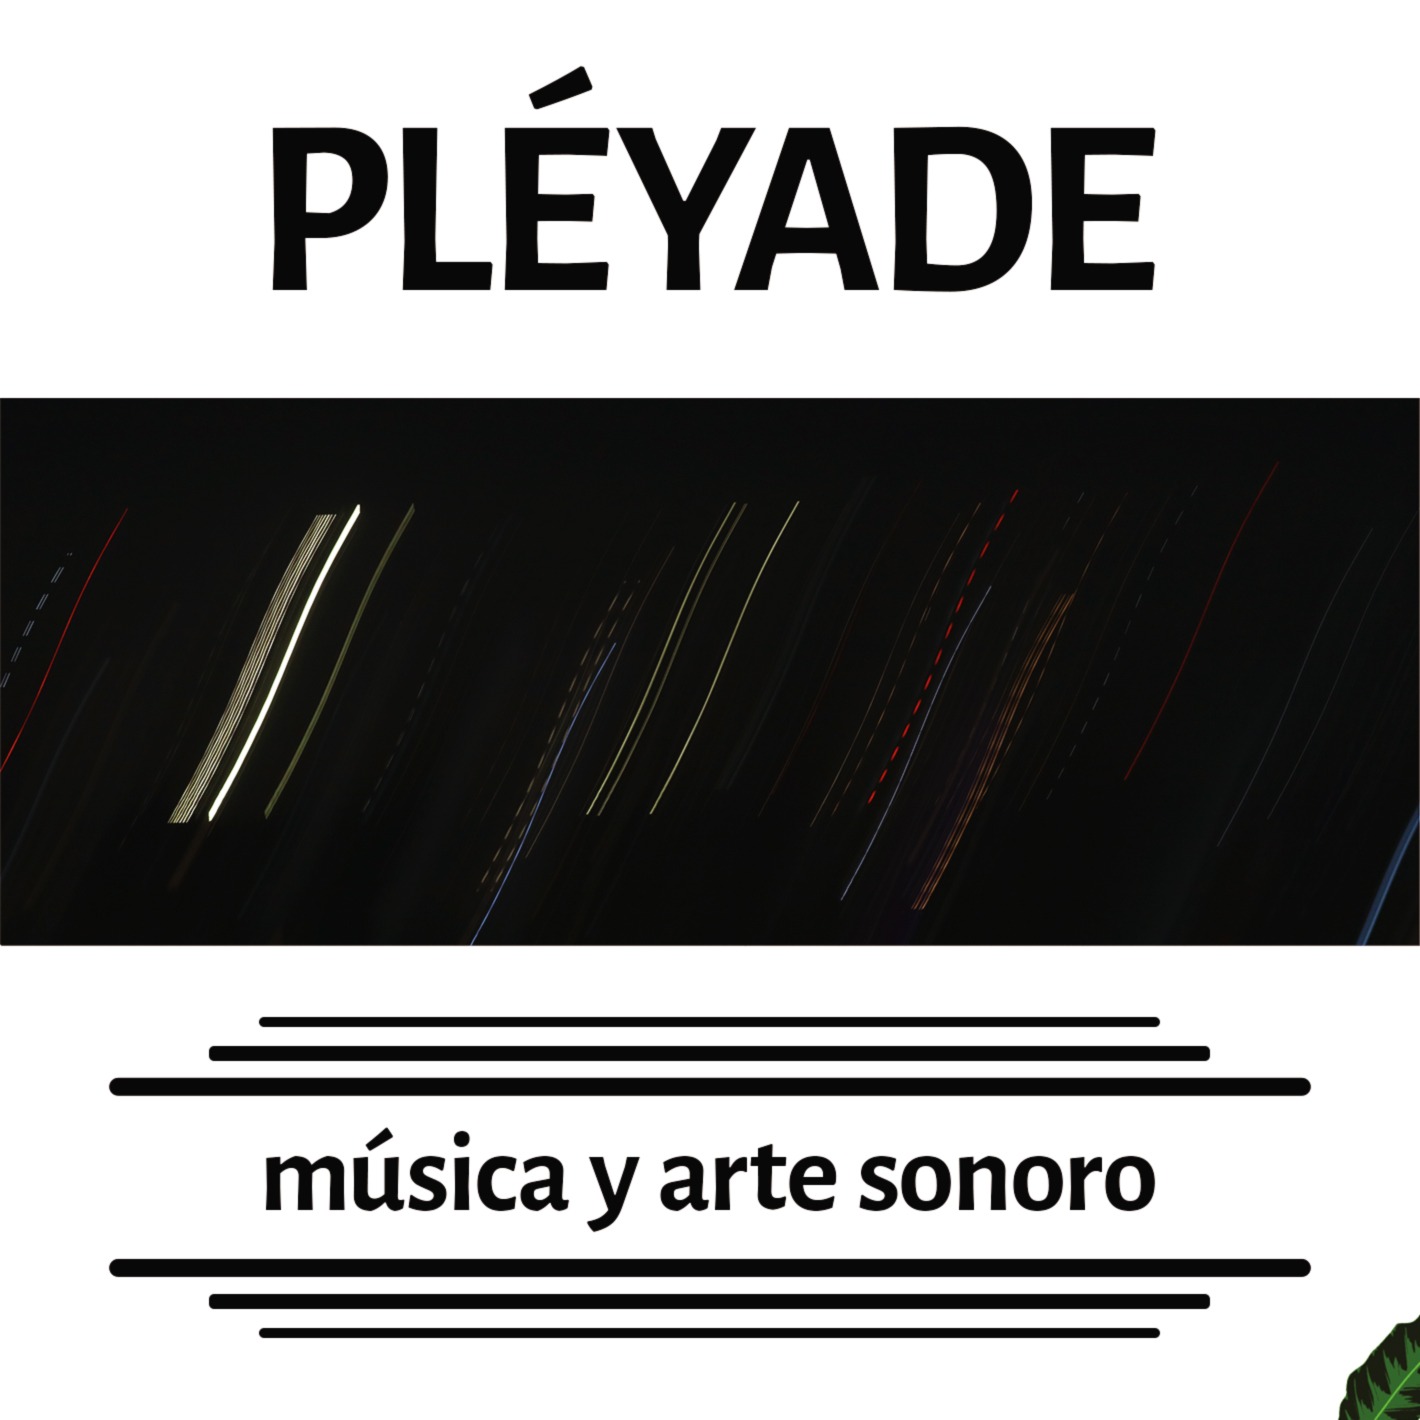 Pléyade – Artistas varios. Producido en el Taller de música y arte sonoro